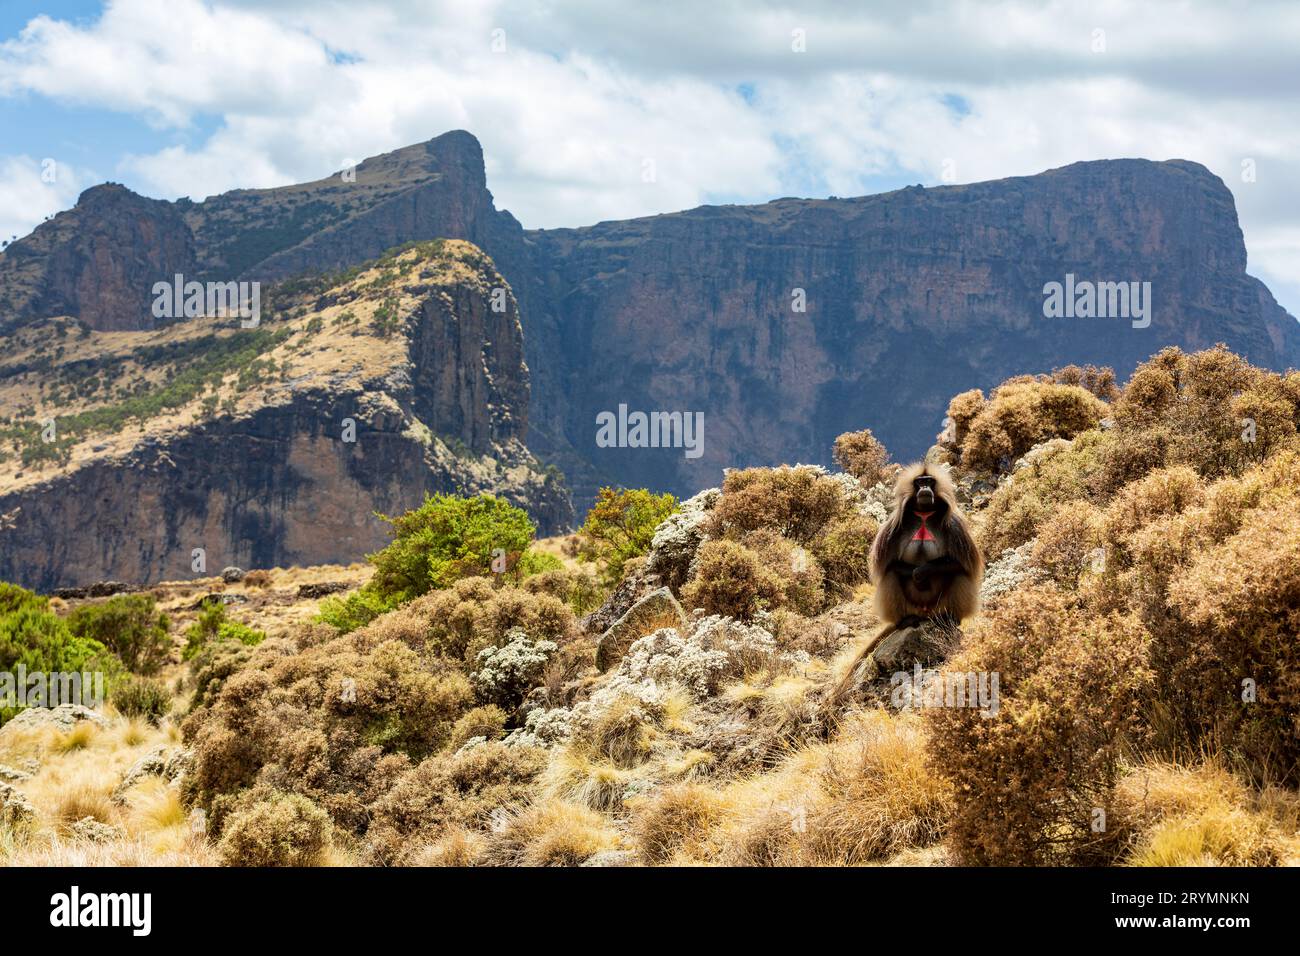 Endemic Gelada, Theropithecus gelada, in Simien mountain, Ethiopia wildlife Stock Photo